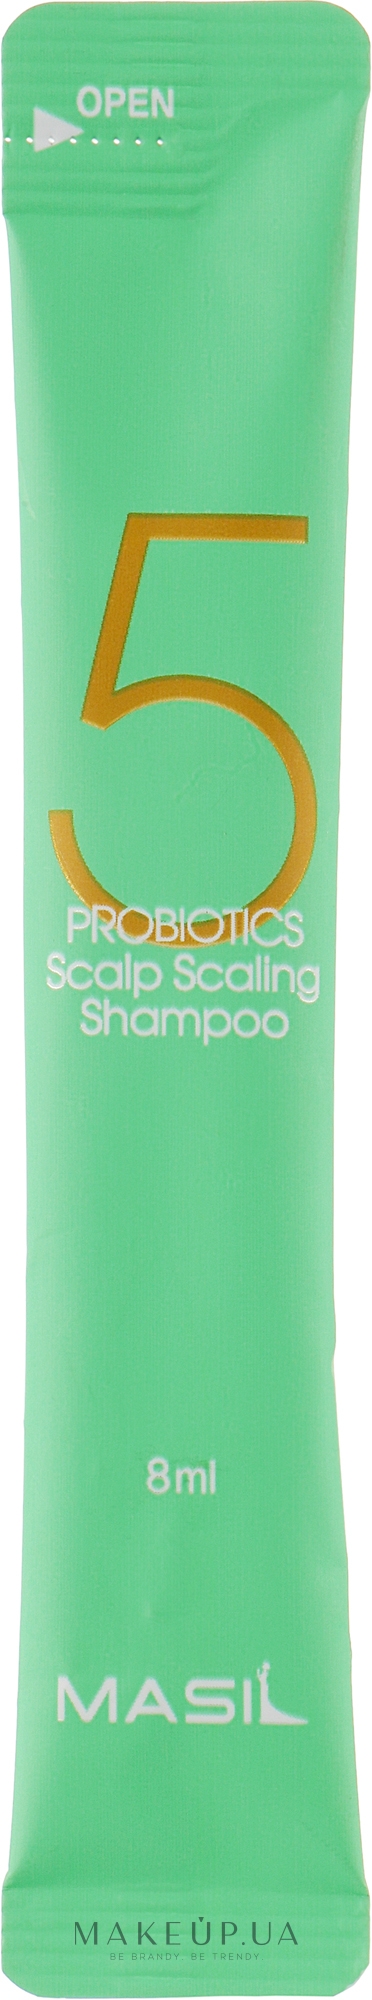 Шампунь для глубокого очищения кожи головы - Masil 5 Probiotics Scalp Scaling Shampoo (пробник) — фото 8ml